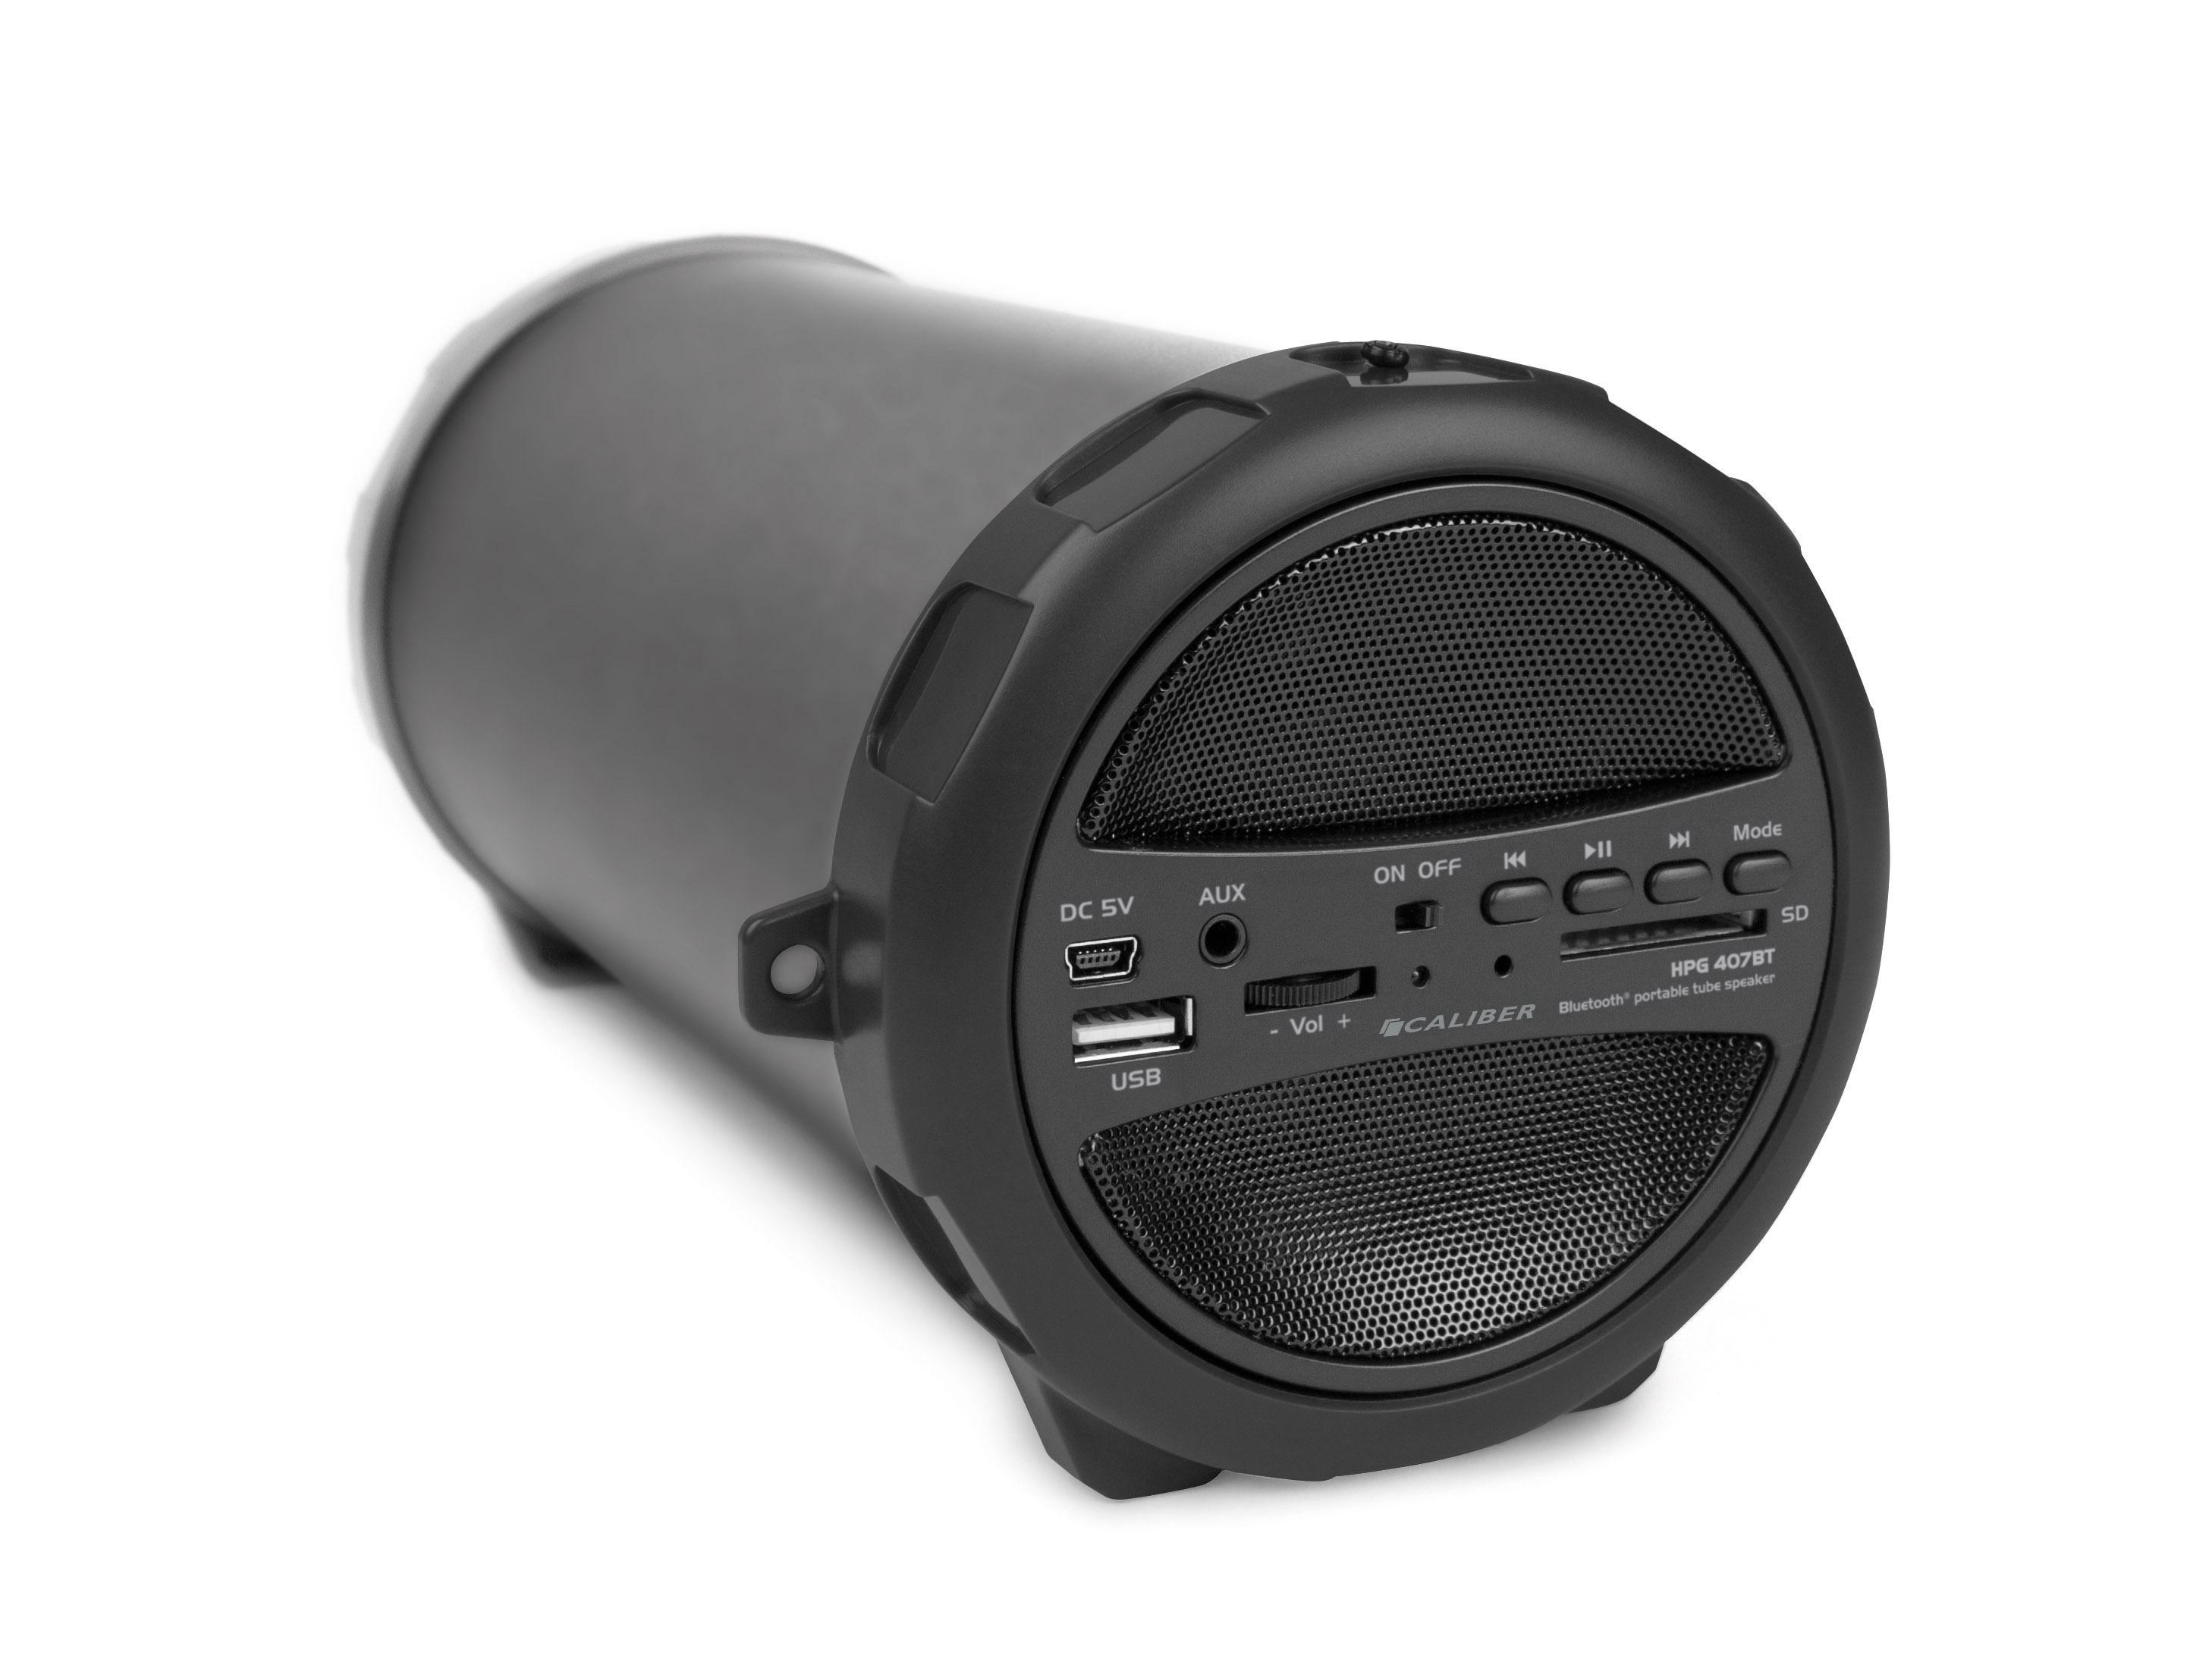 Schwarz HPG407BT CALIBER Bluetooth Lautsprecher,